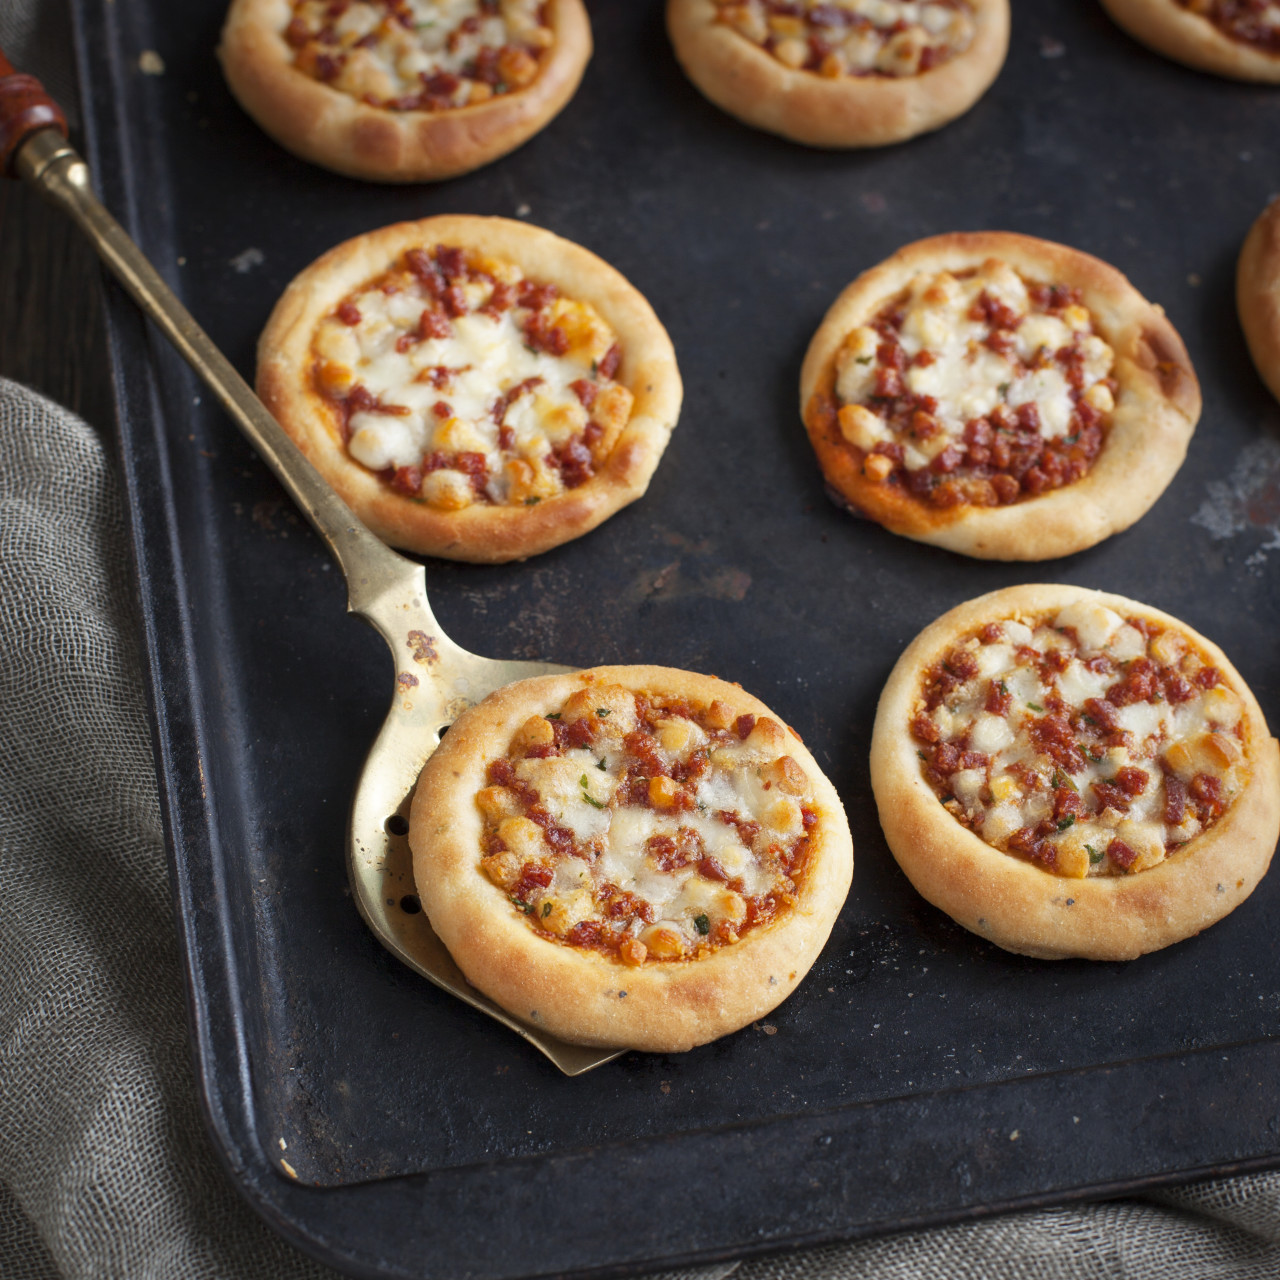 мини пиццы в духовке из дрожжевого теста в домашних условиях рецепт с фото пошаговый фото 116